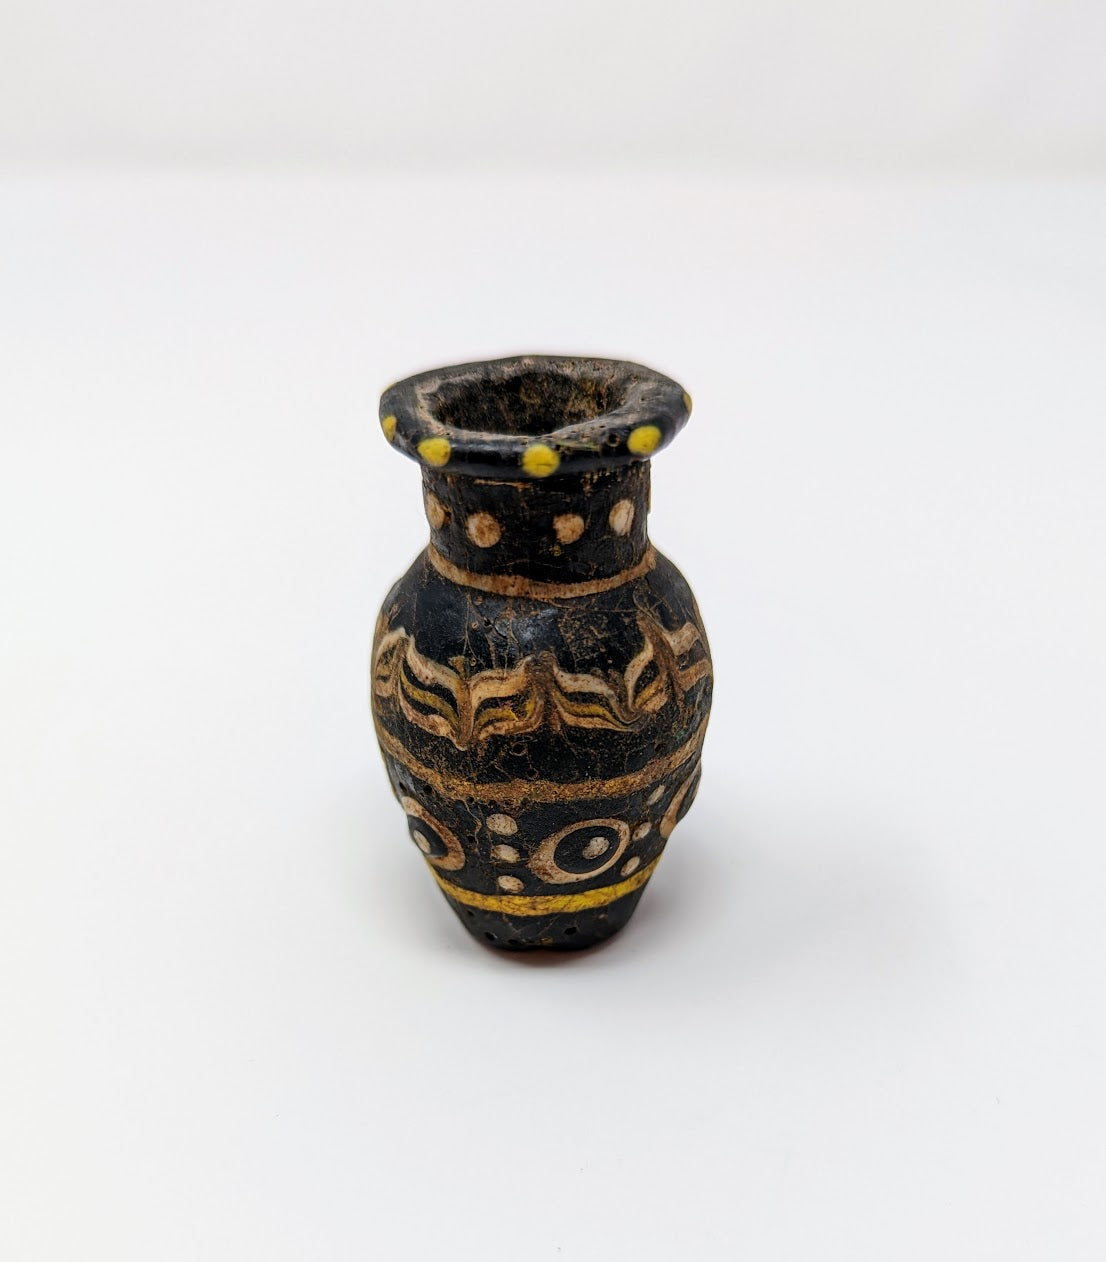 Antique Phoenician Mosaic Glass Bottle (c. 300 B.C.)